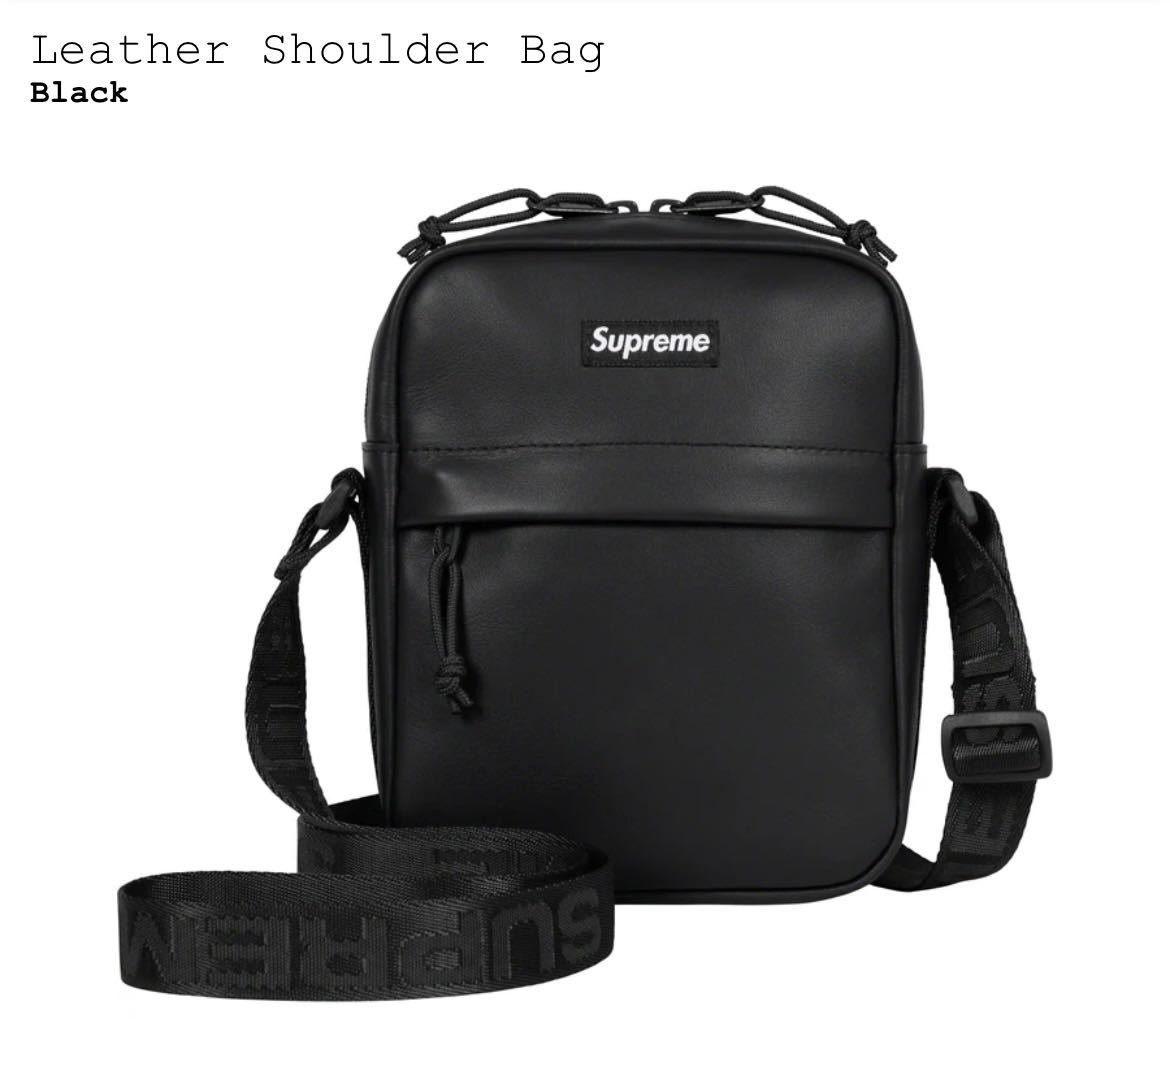 新品 Supreme Leather Shoulder Bag Black / シュプリーム レザー 